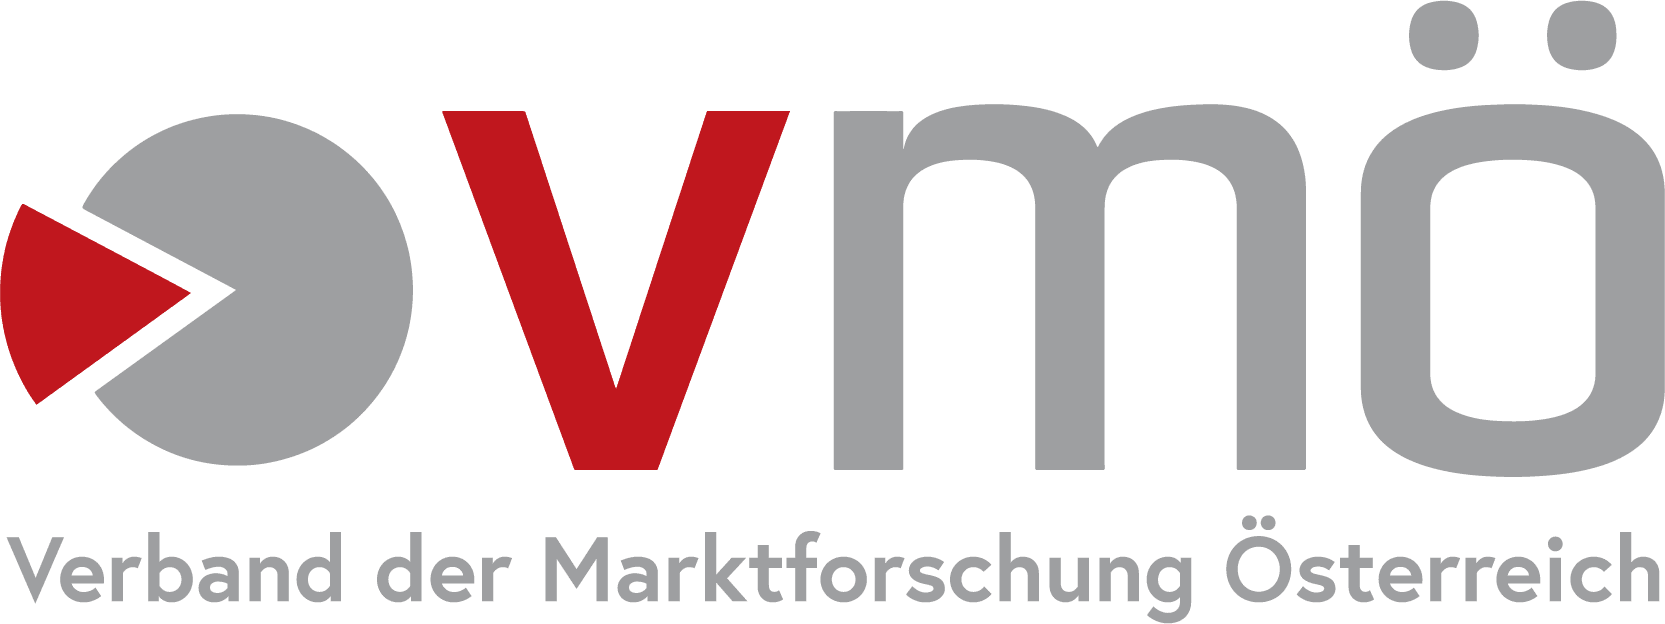 VMÖ Verband der Marktforschung Österreich